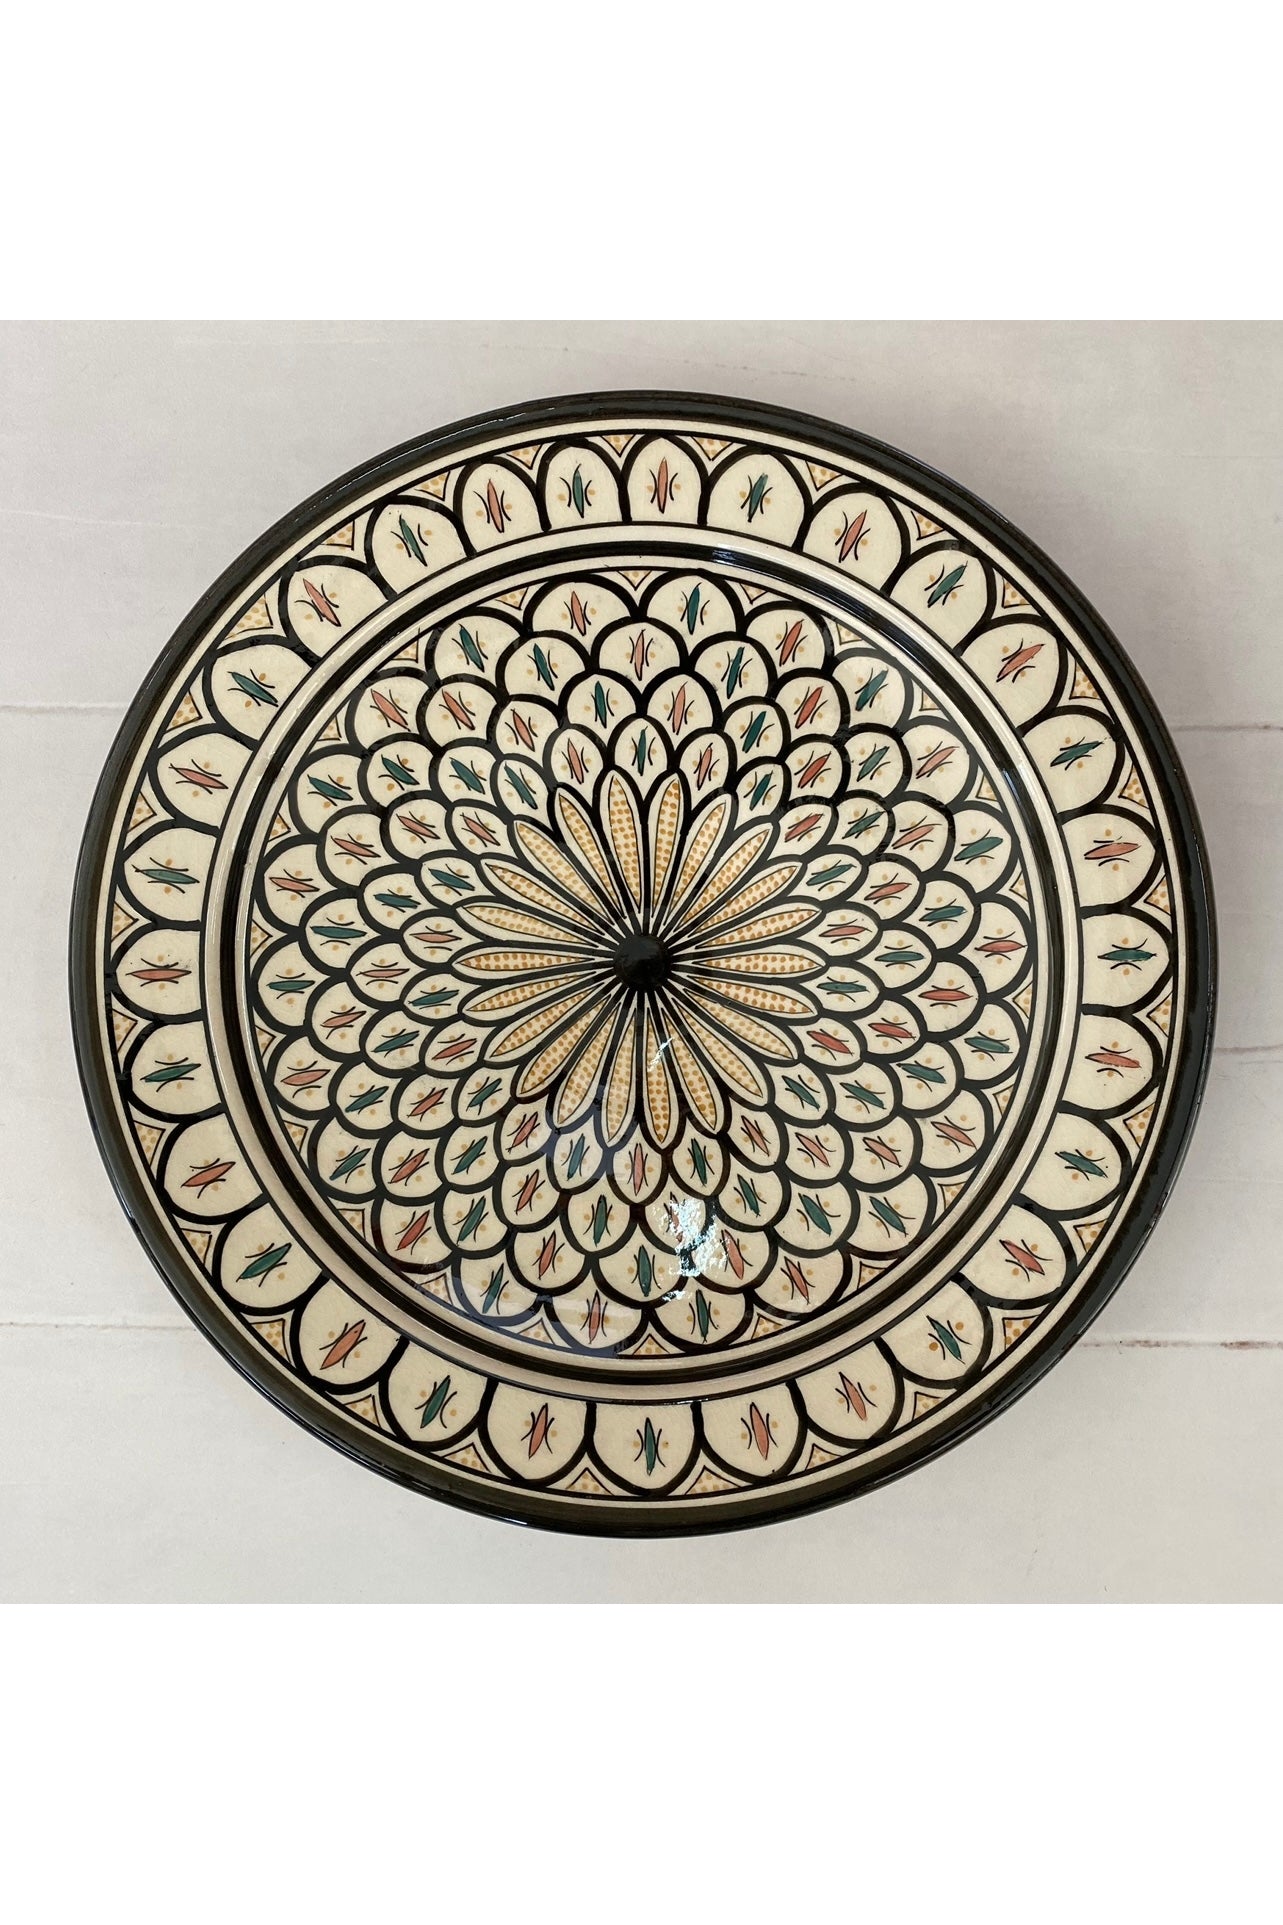 Marokkansk keramikfad 30cm i dia